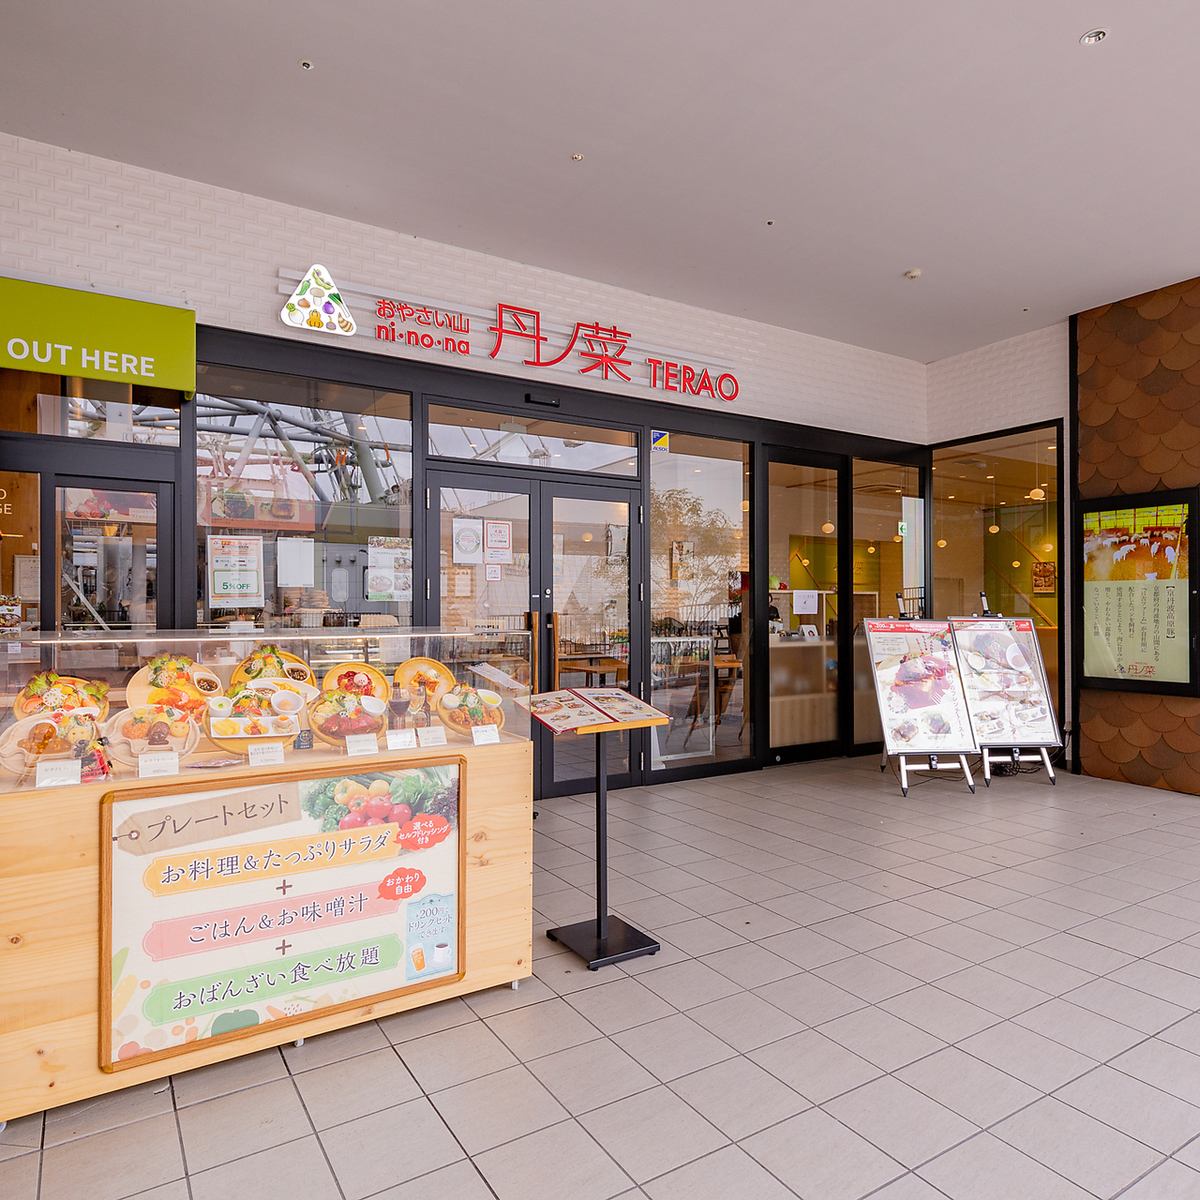 使用大量京丹波产丰富、美味、色彩缤纷的食材的“Oyasai Kitchen”